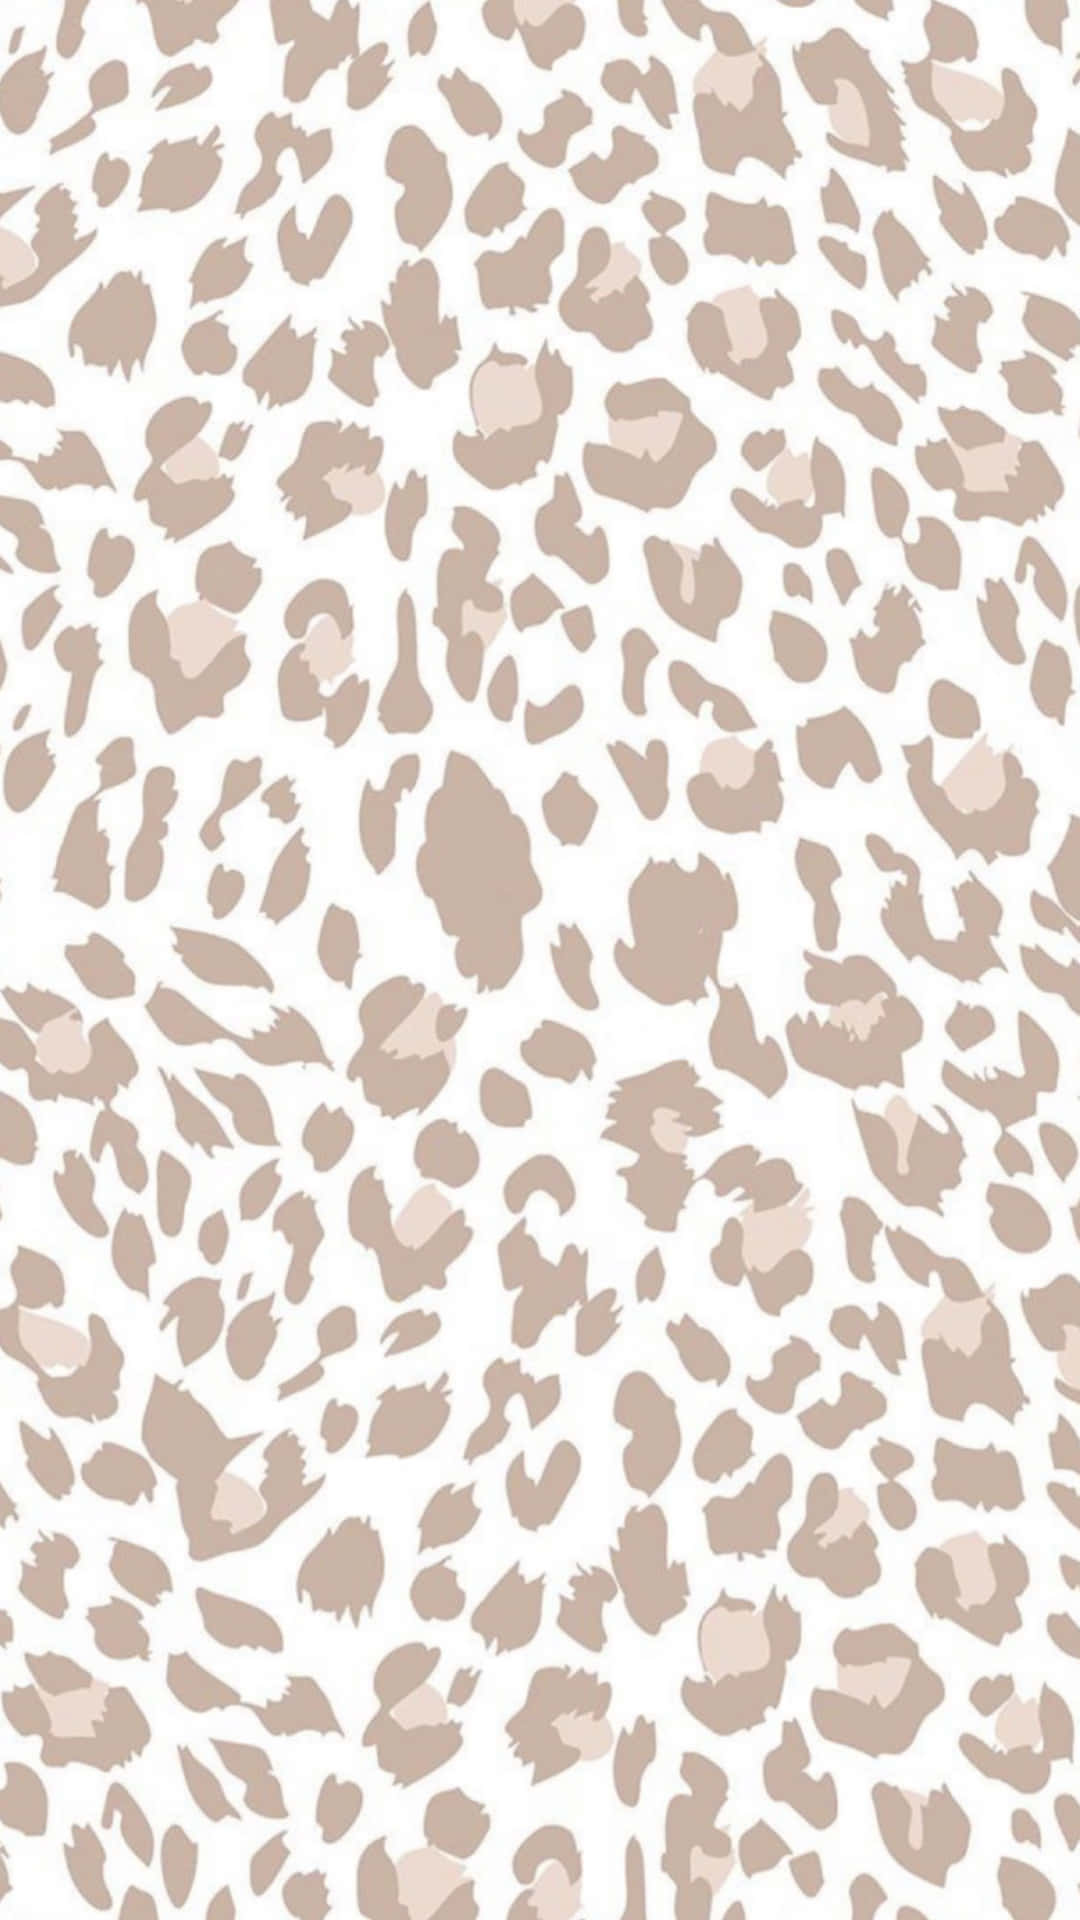 Pastel Brown Aesthetic Cute Cheetah Print Wallpaper